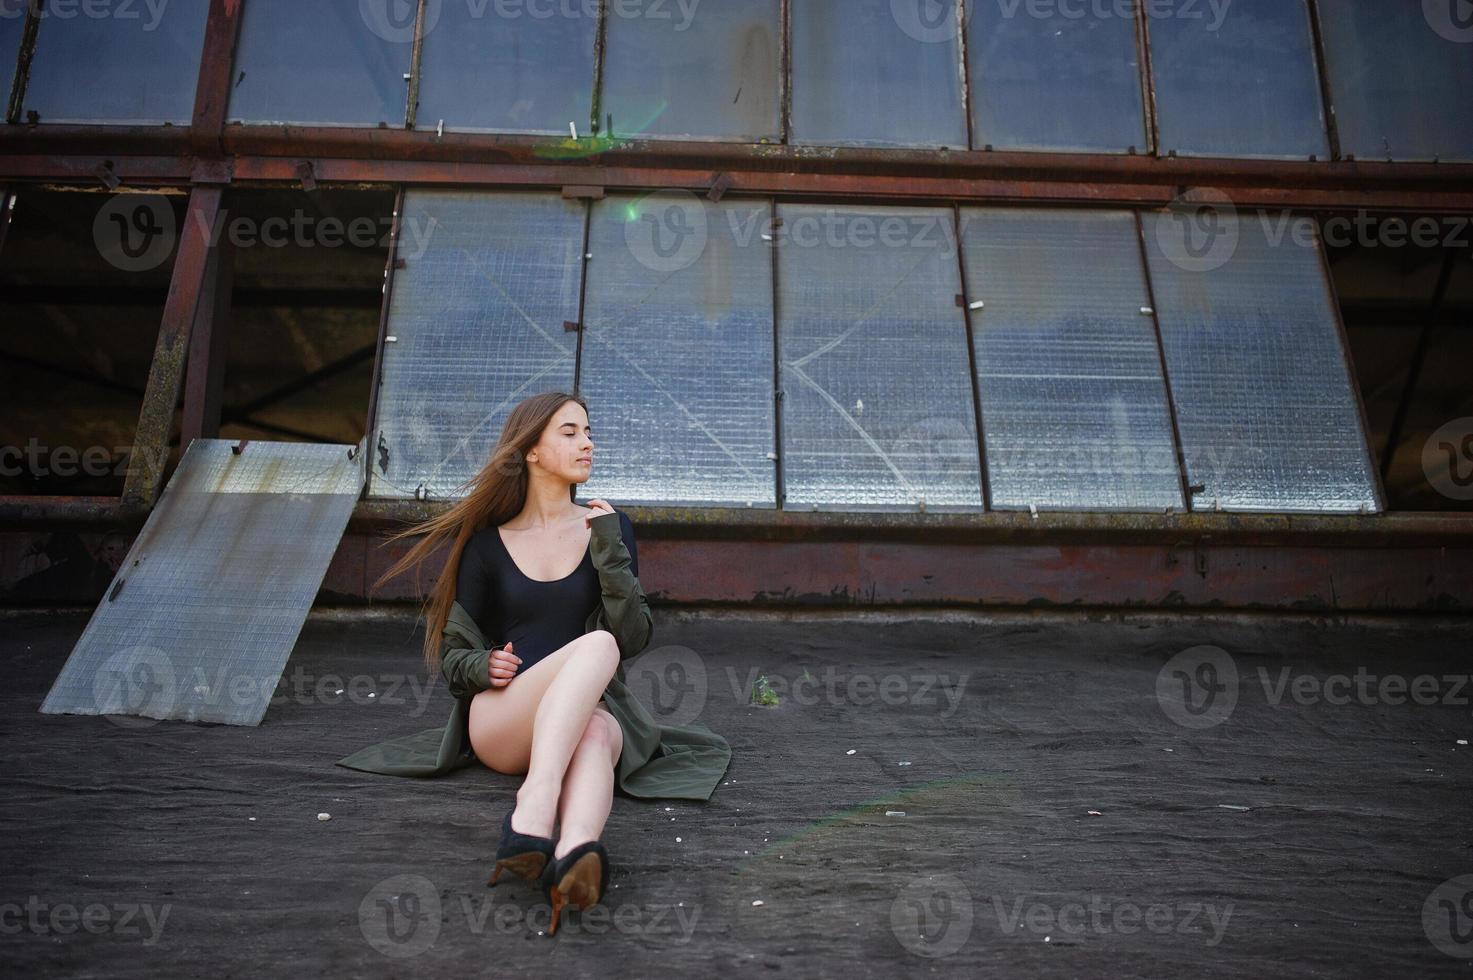 sexy model meisje wit lange benen bij zwarte lingerie outfit body badpak combidress en jas gesteld op het dak van verlaten industriële plaats met ramen. foto